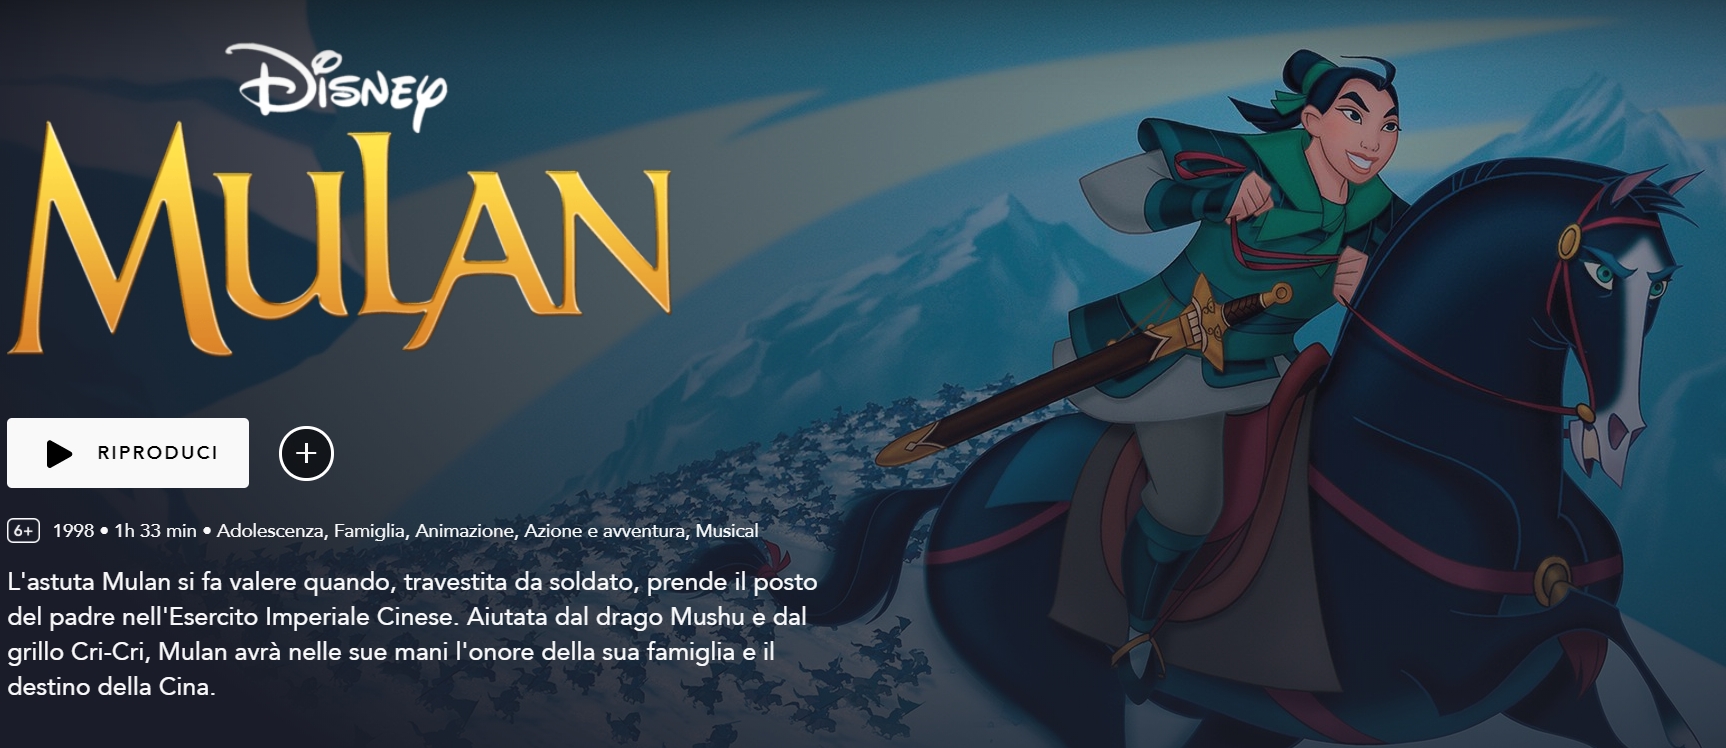 Mulan, Disney Plus